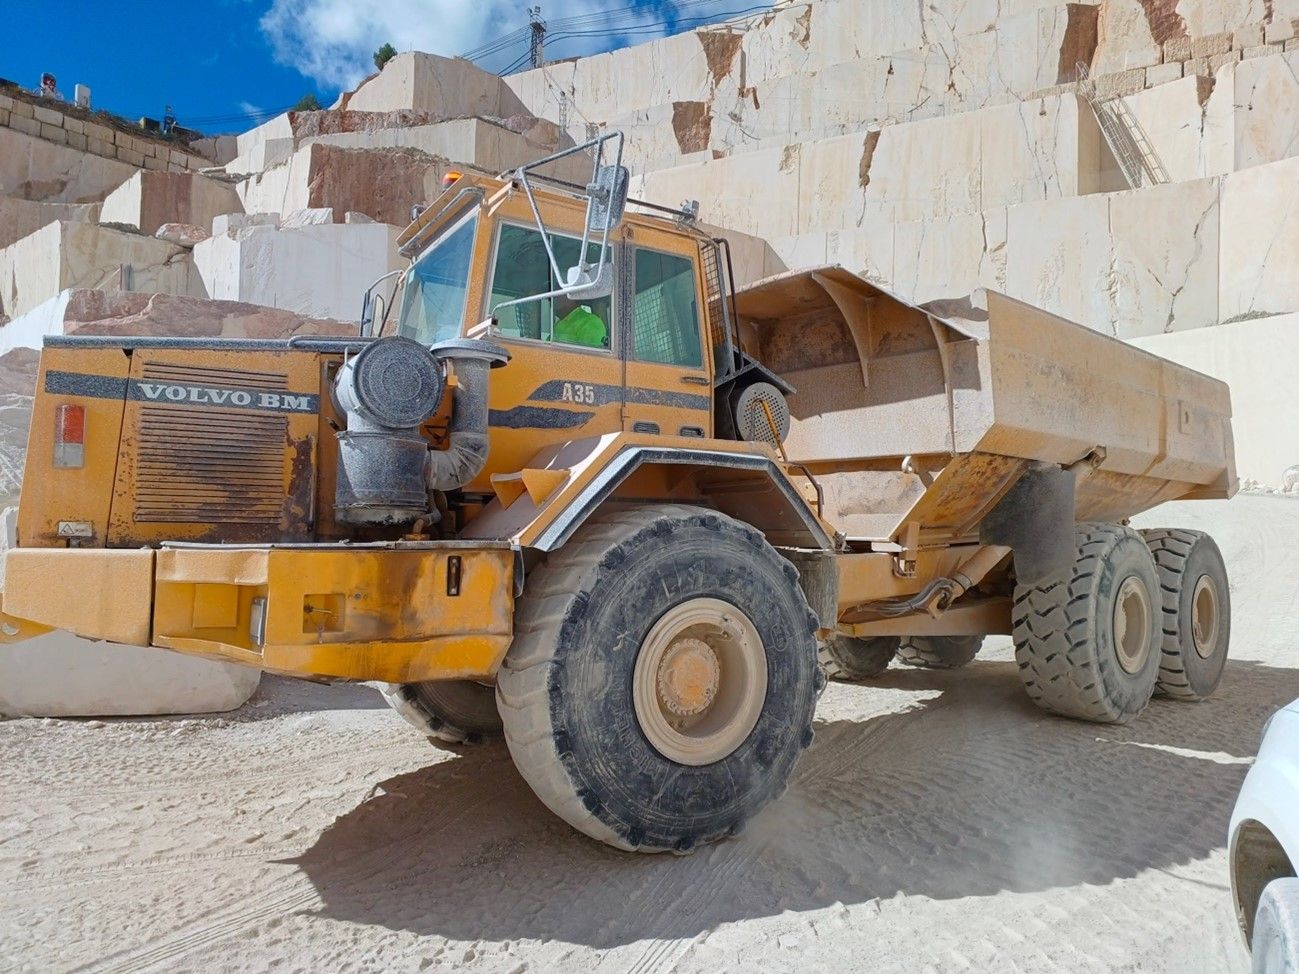 MARMOL DE ALICANTE, Asociación Empresarial de la Comunidad Valenciana, promueve la coordinación de las actividades empresariales (CAE) y la mejora de las condiciones de trabajo en el ámbito de la seguridad del personal y el desarrollo de las labores en establecimientos mineros de roca ornamental